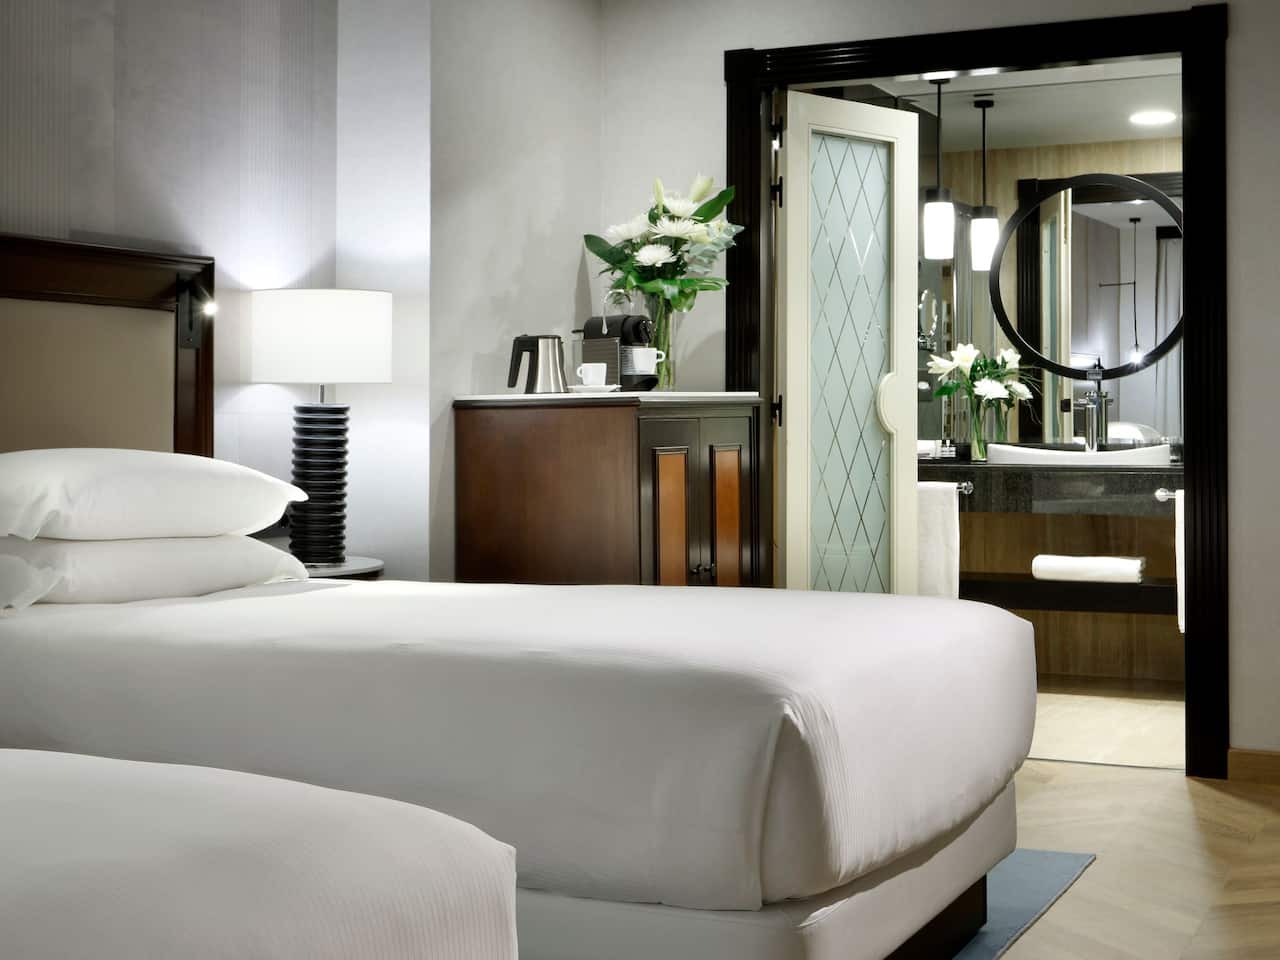 Detalles de la habitación Regency Suite Twin con dos camas individuales en nuestro hotel Hyatt Regency Hesperia Madrid.